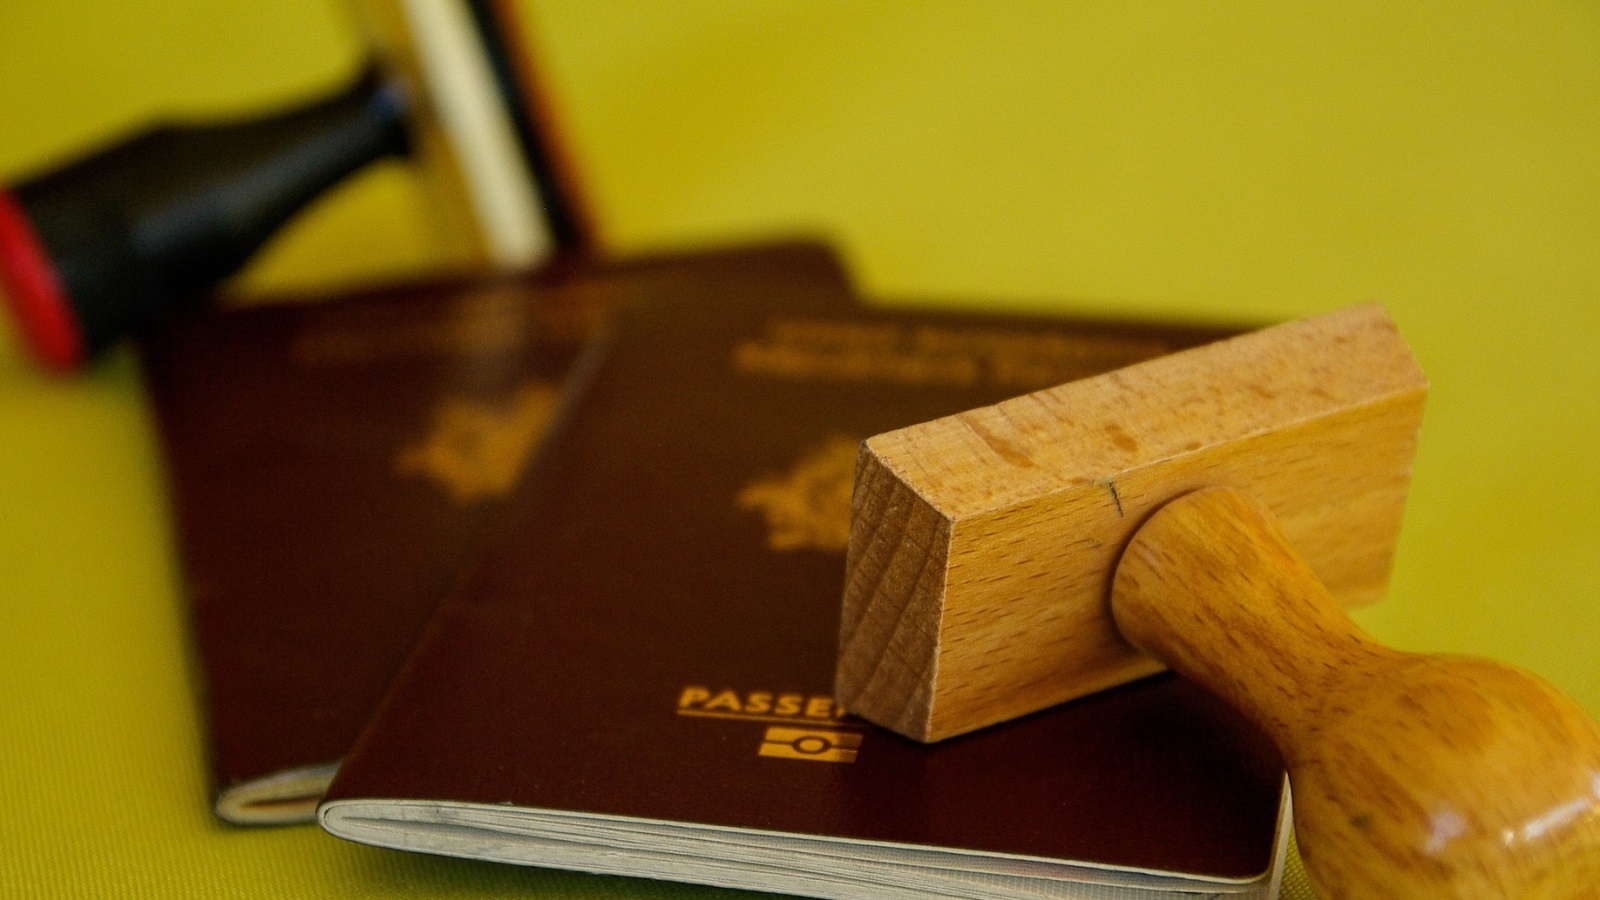 تظل التأشيرات الصادرة للطلبة سارية طول فترة الدراسة وحتى مدة أقصاها أربع سنوات، ويجب على الطالب بعد وصوله لنيوزلندا التقدم للحصول على تصريح الدخول وذلك عمل إكمال بطاقة السفر